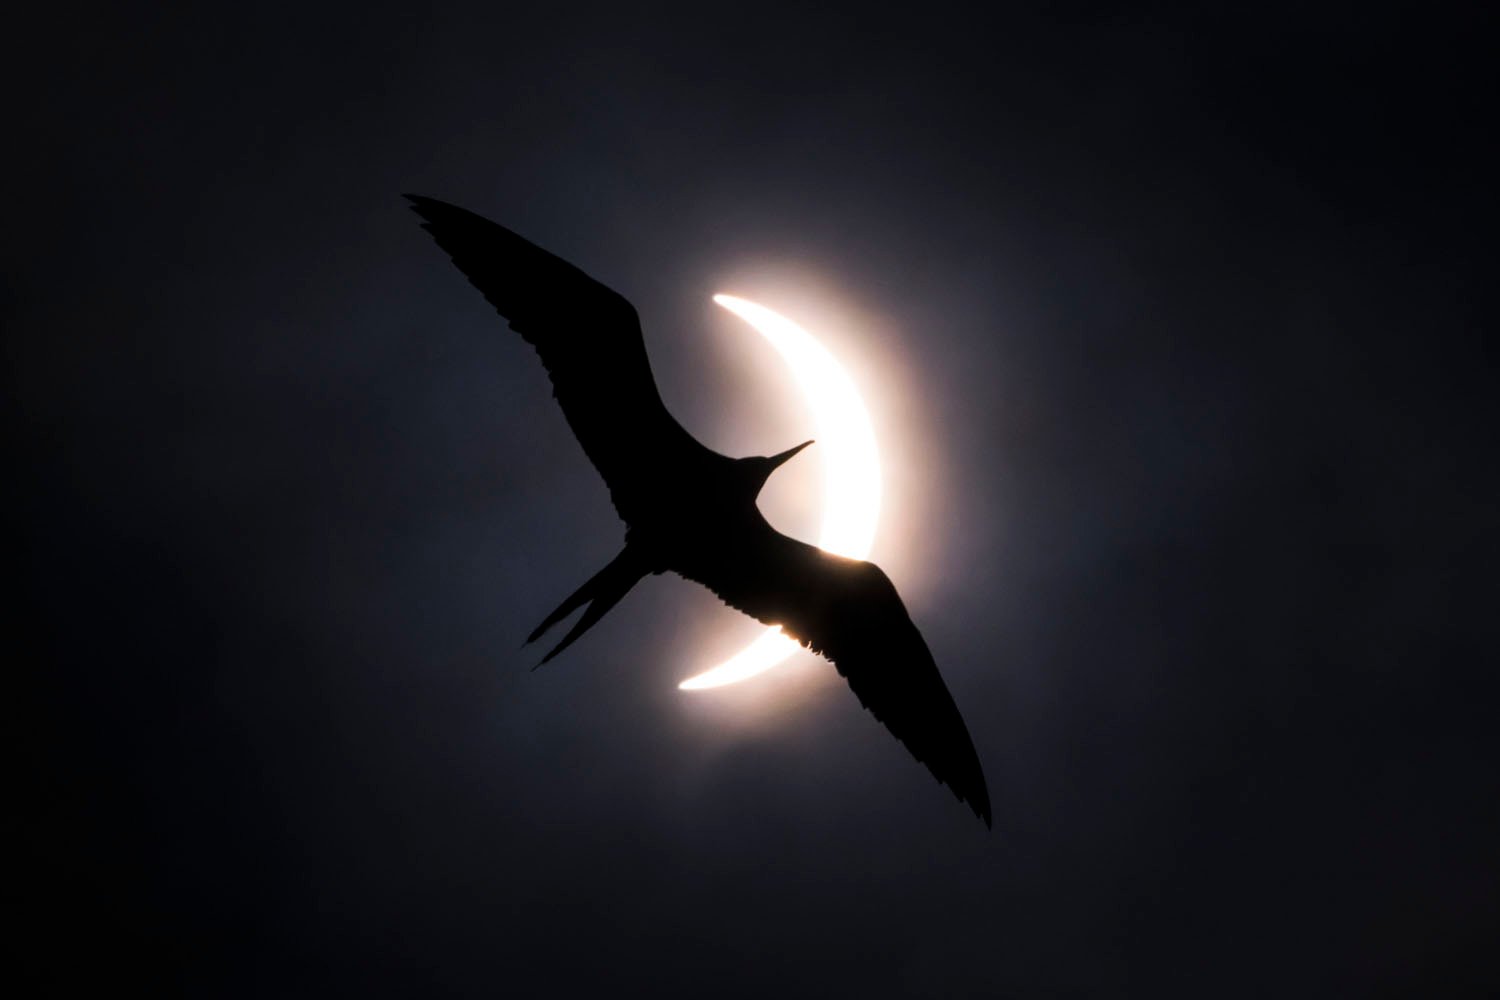 Silueta de un pájaro volando frente a un sol parcialmente eclipsado, creando un dramático contraste entre la forma oscura del pájaro y la brillante corona solar.